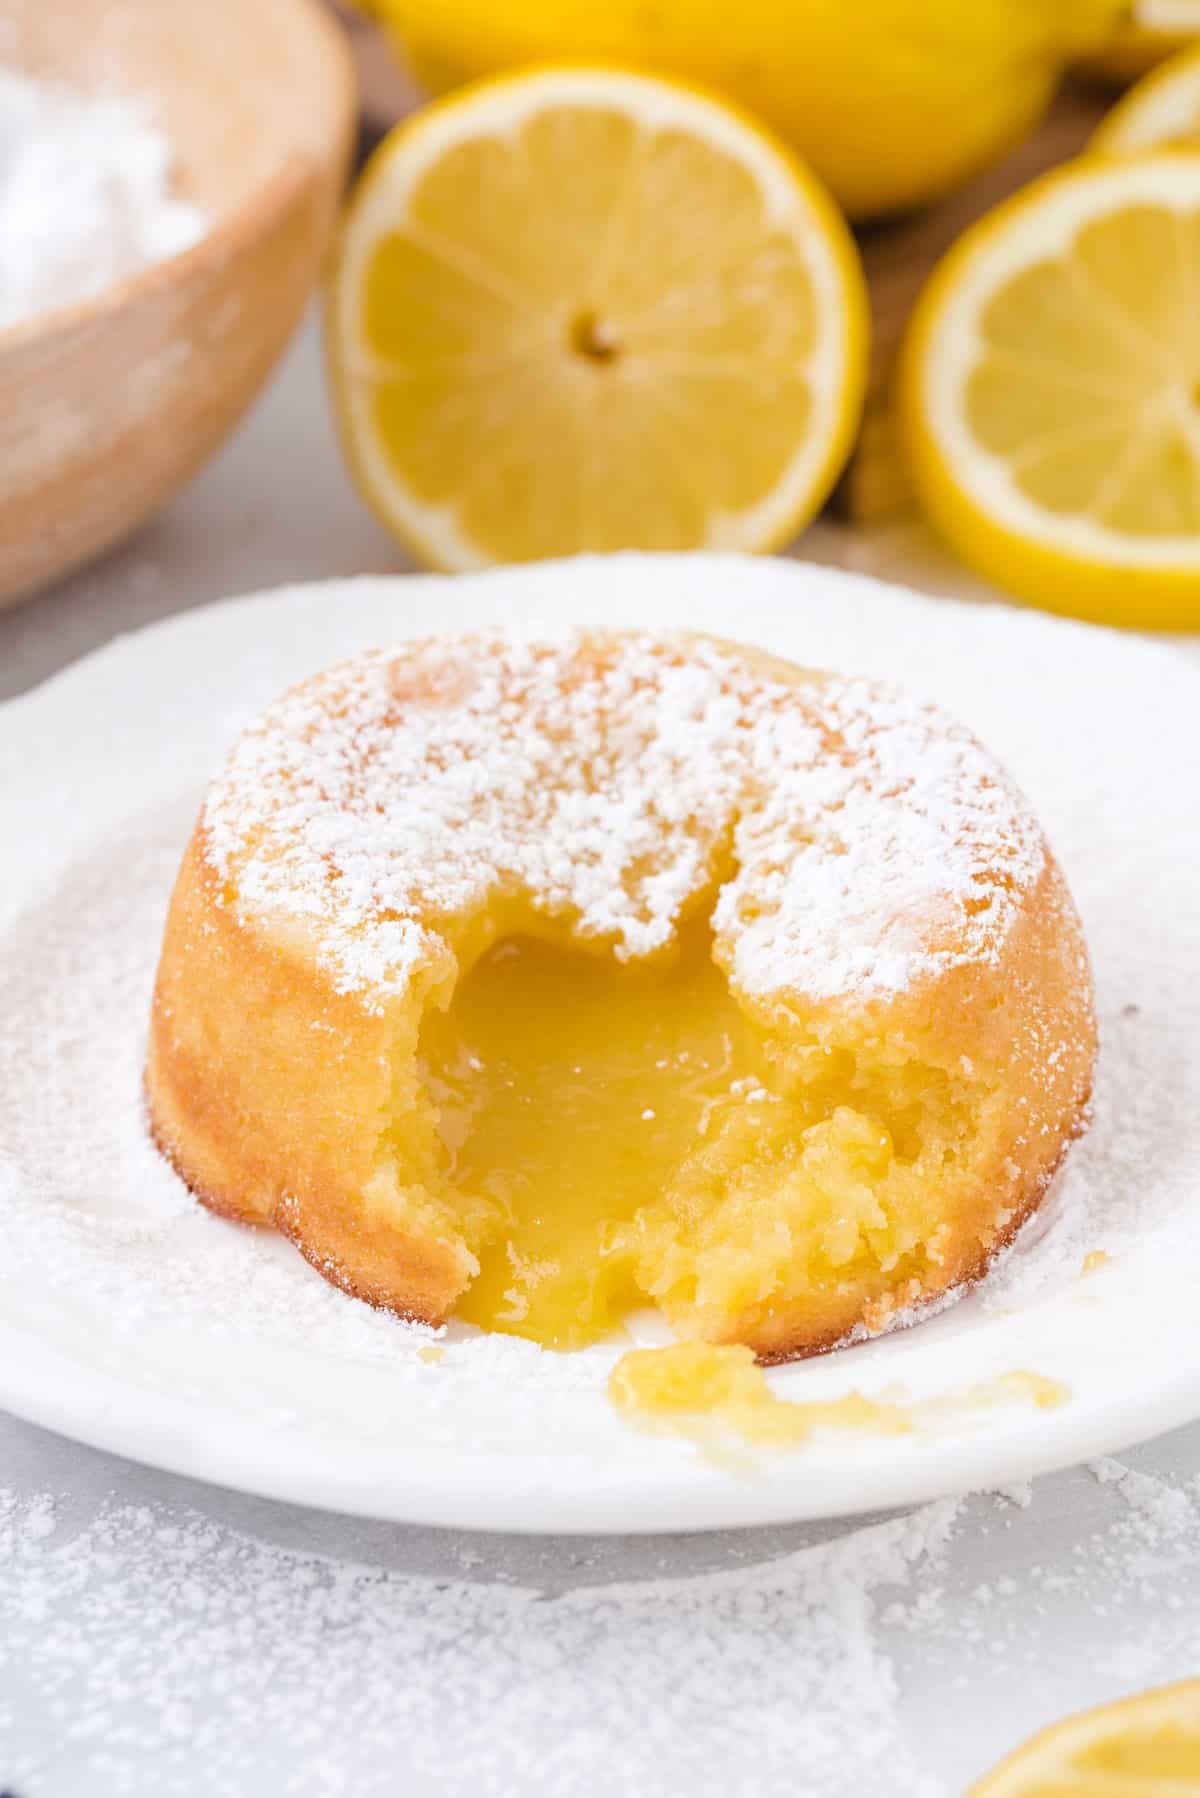 showing the inside of lemon lava cake